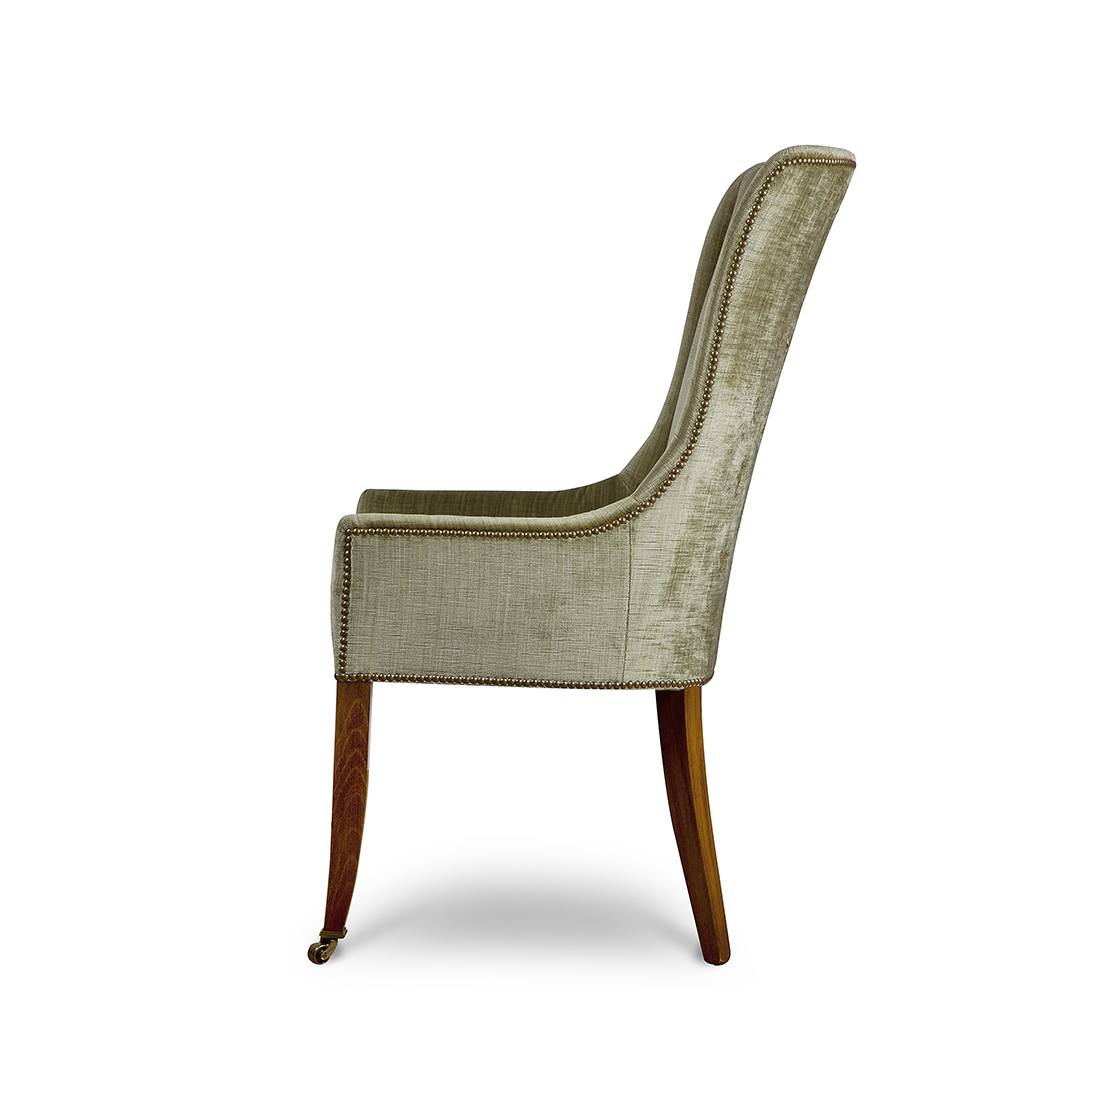 Kingsley dining chair in Como silk velvet - Fern - Beaumont & Fletcher